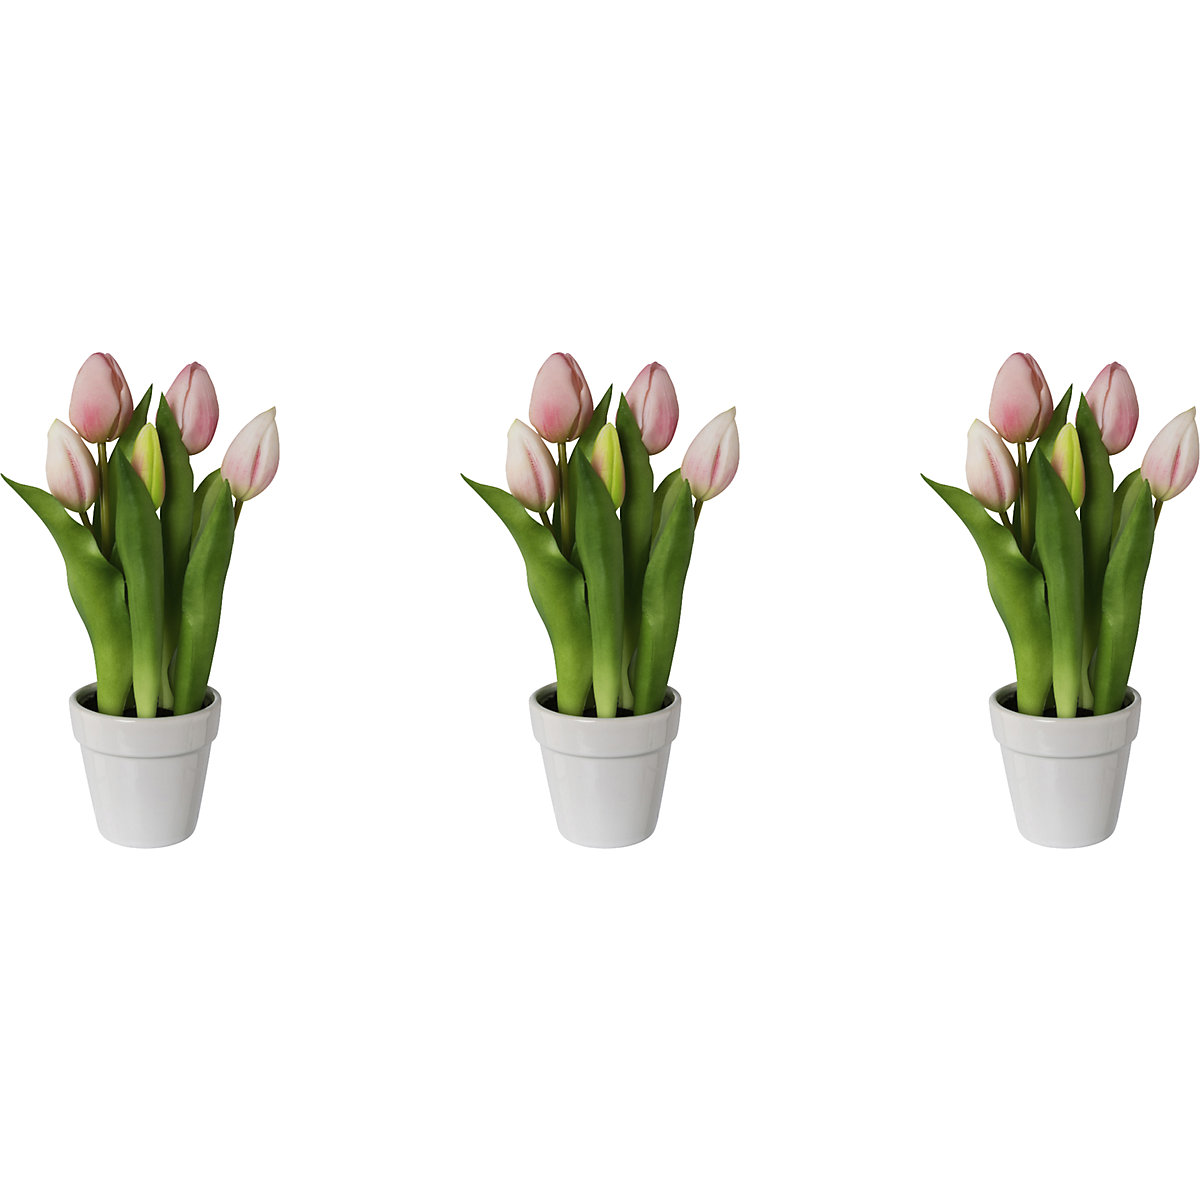 Tulipes, real touch, dans un pot céramique